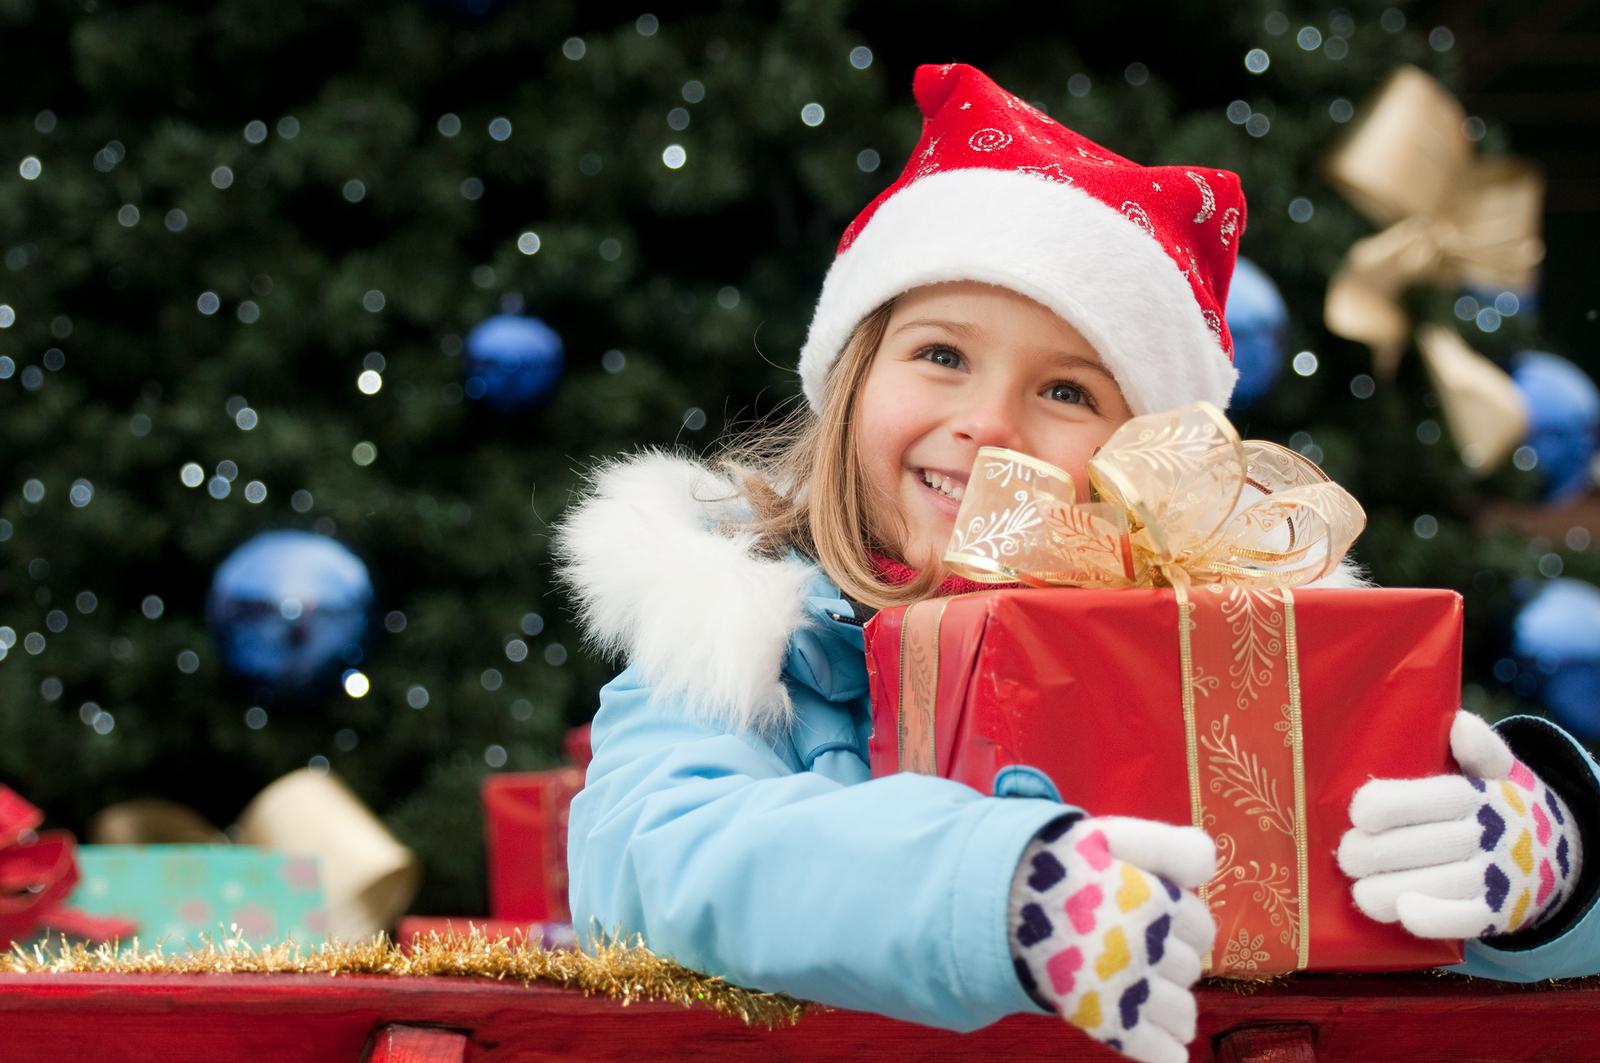 Novogodišnji praznici su vrijeme darivanja i pomaganja: Obradujte jedno dijete